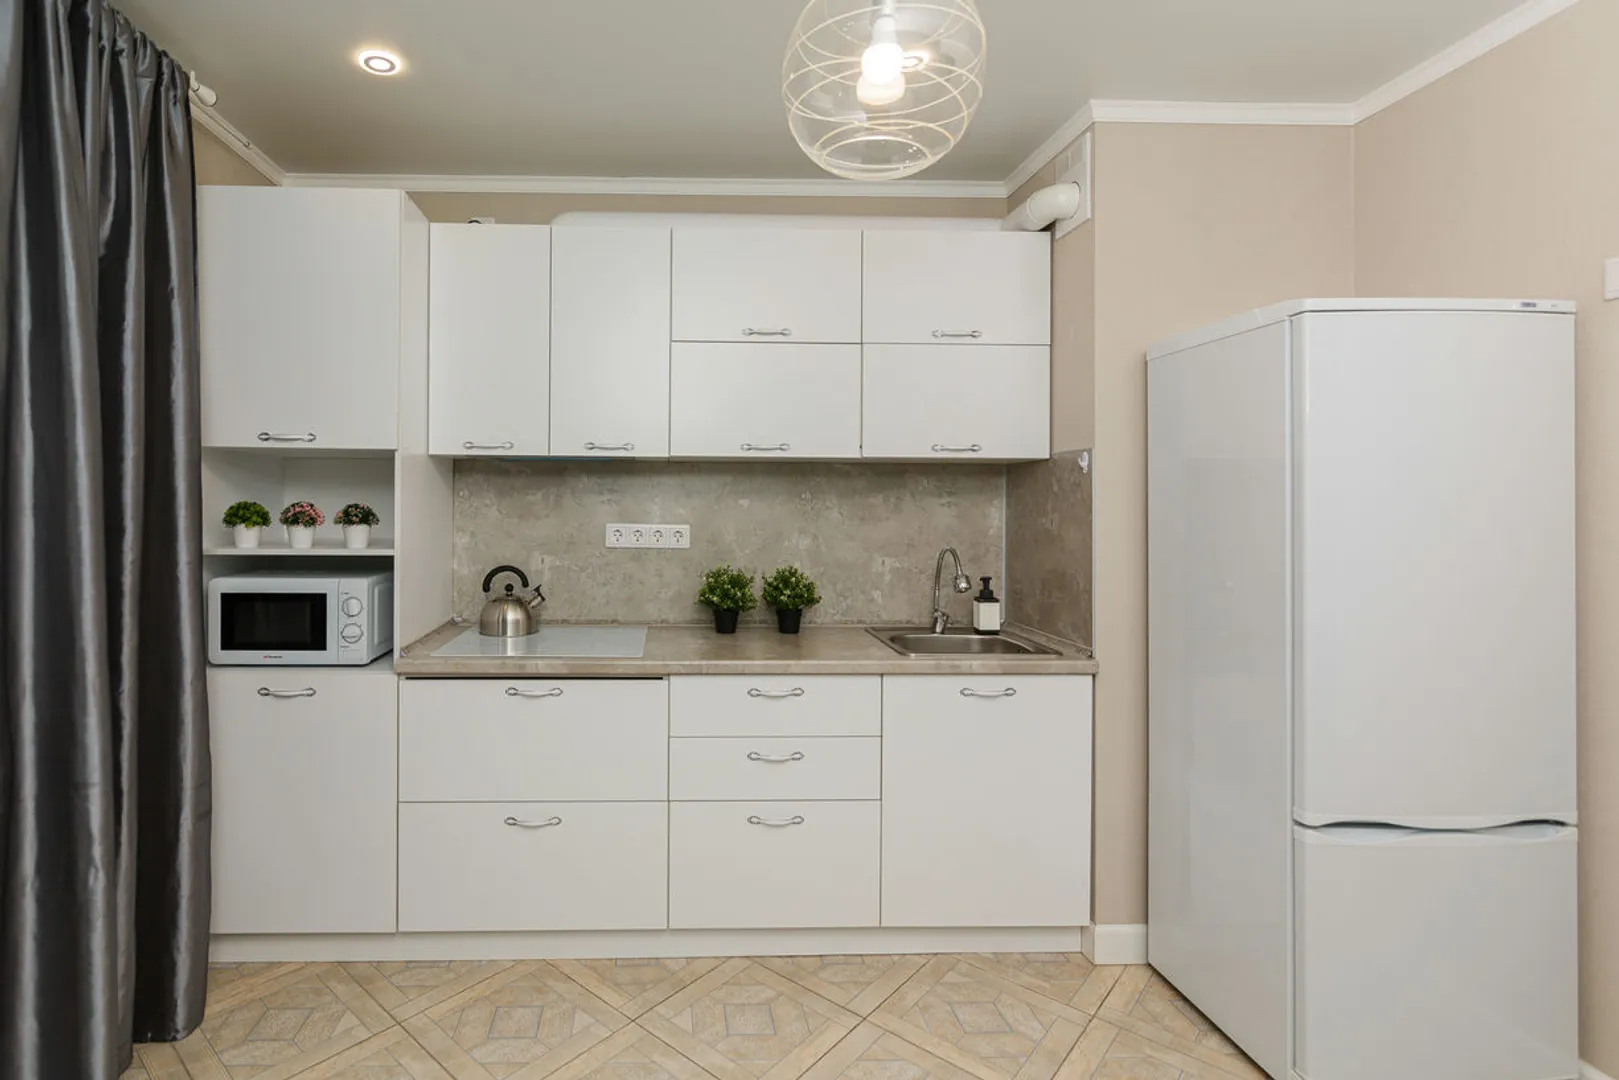 Полноценный кухонный гарнитур с большим холодильником. Кухня наполнена всем необходимым для приготовления и принятия пищи 